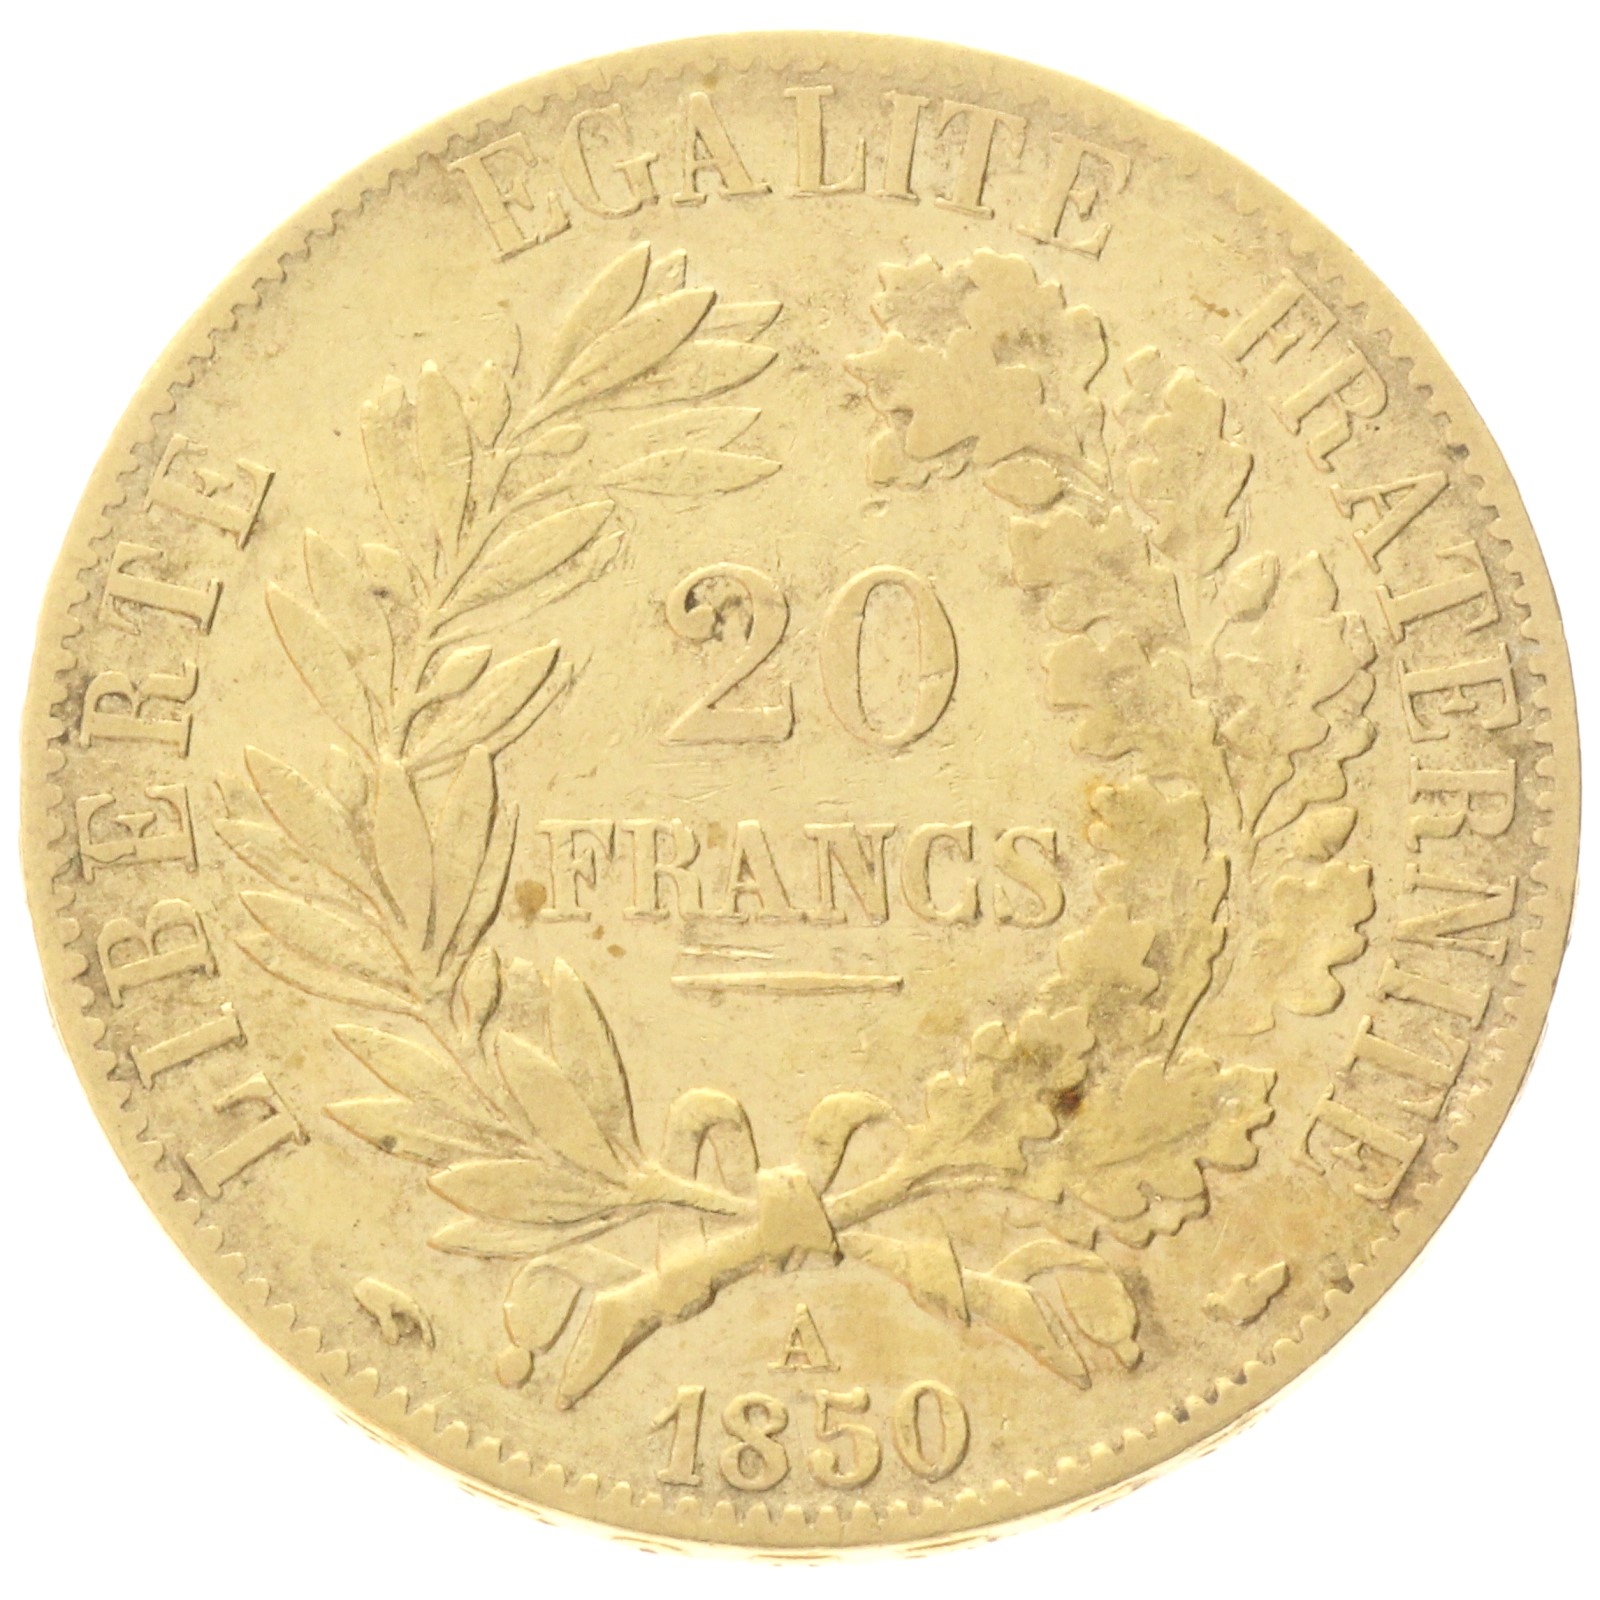 France - 20 francs - 1850 - A 